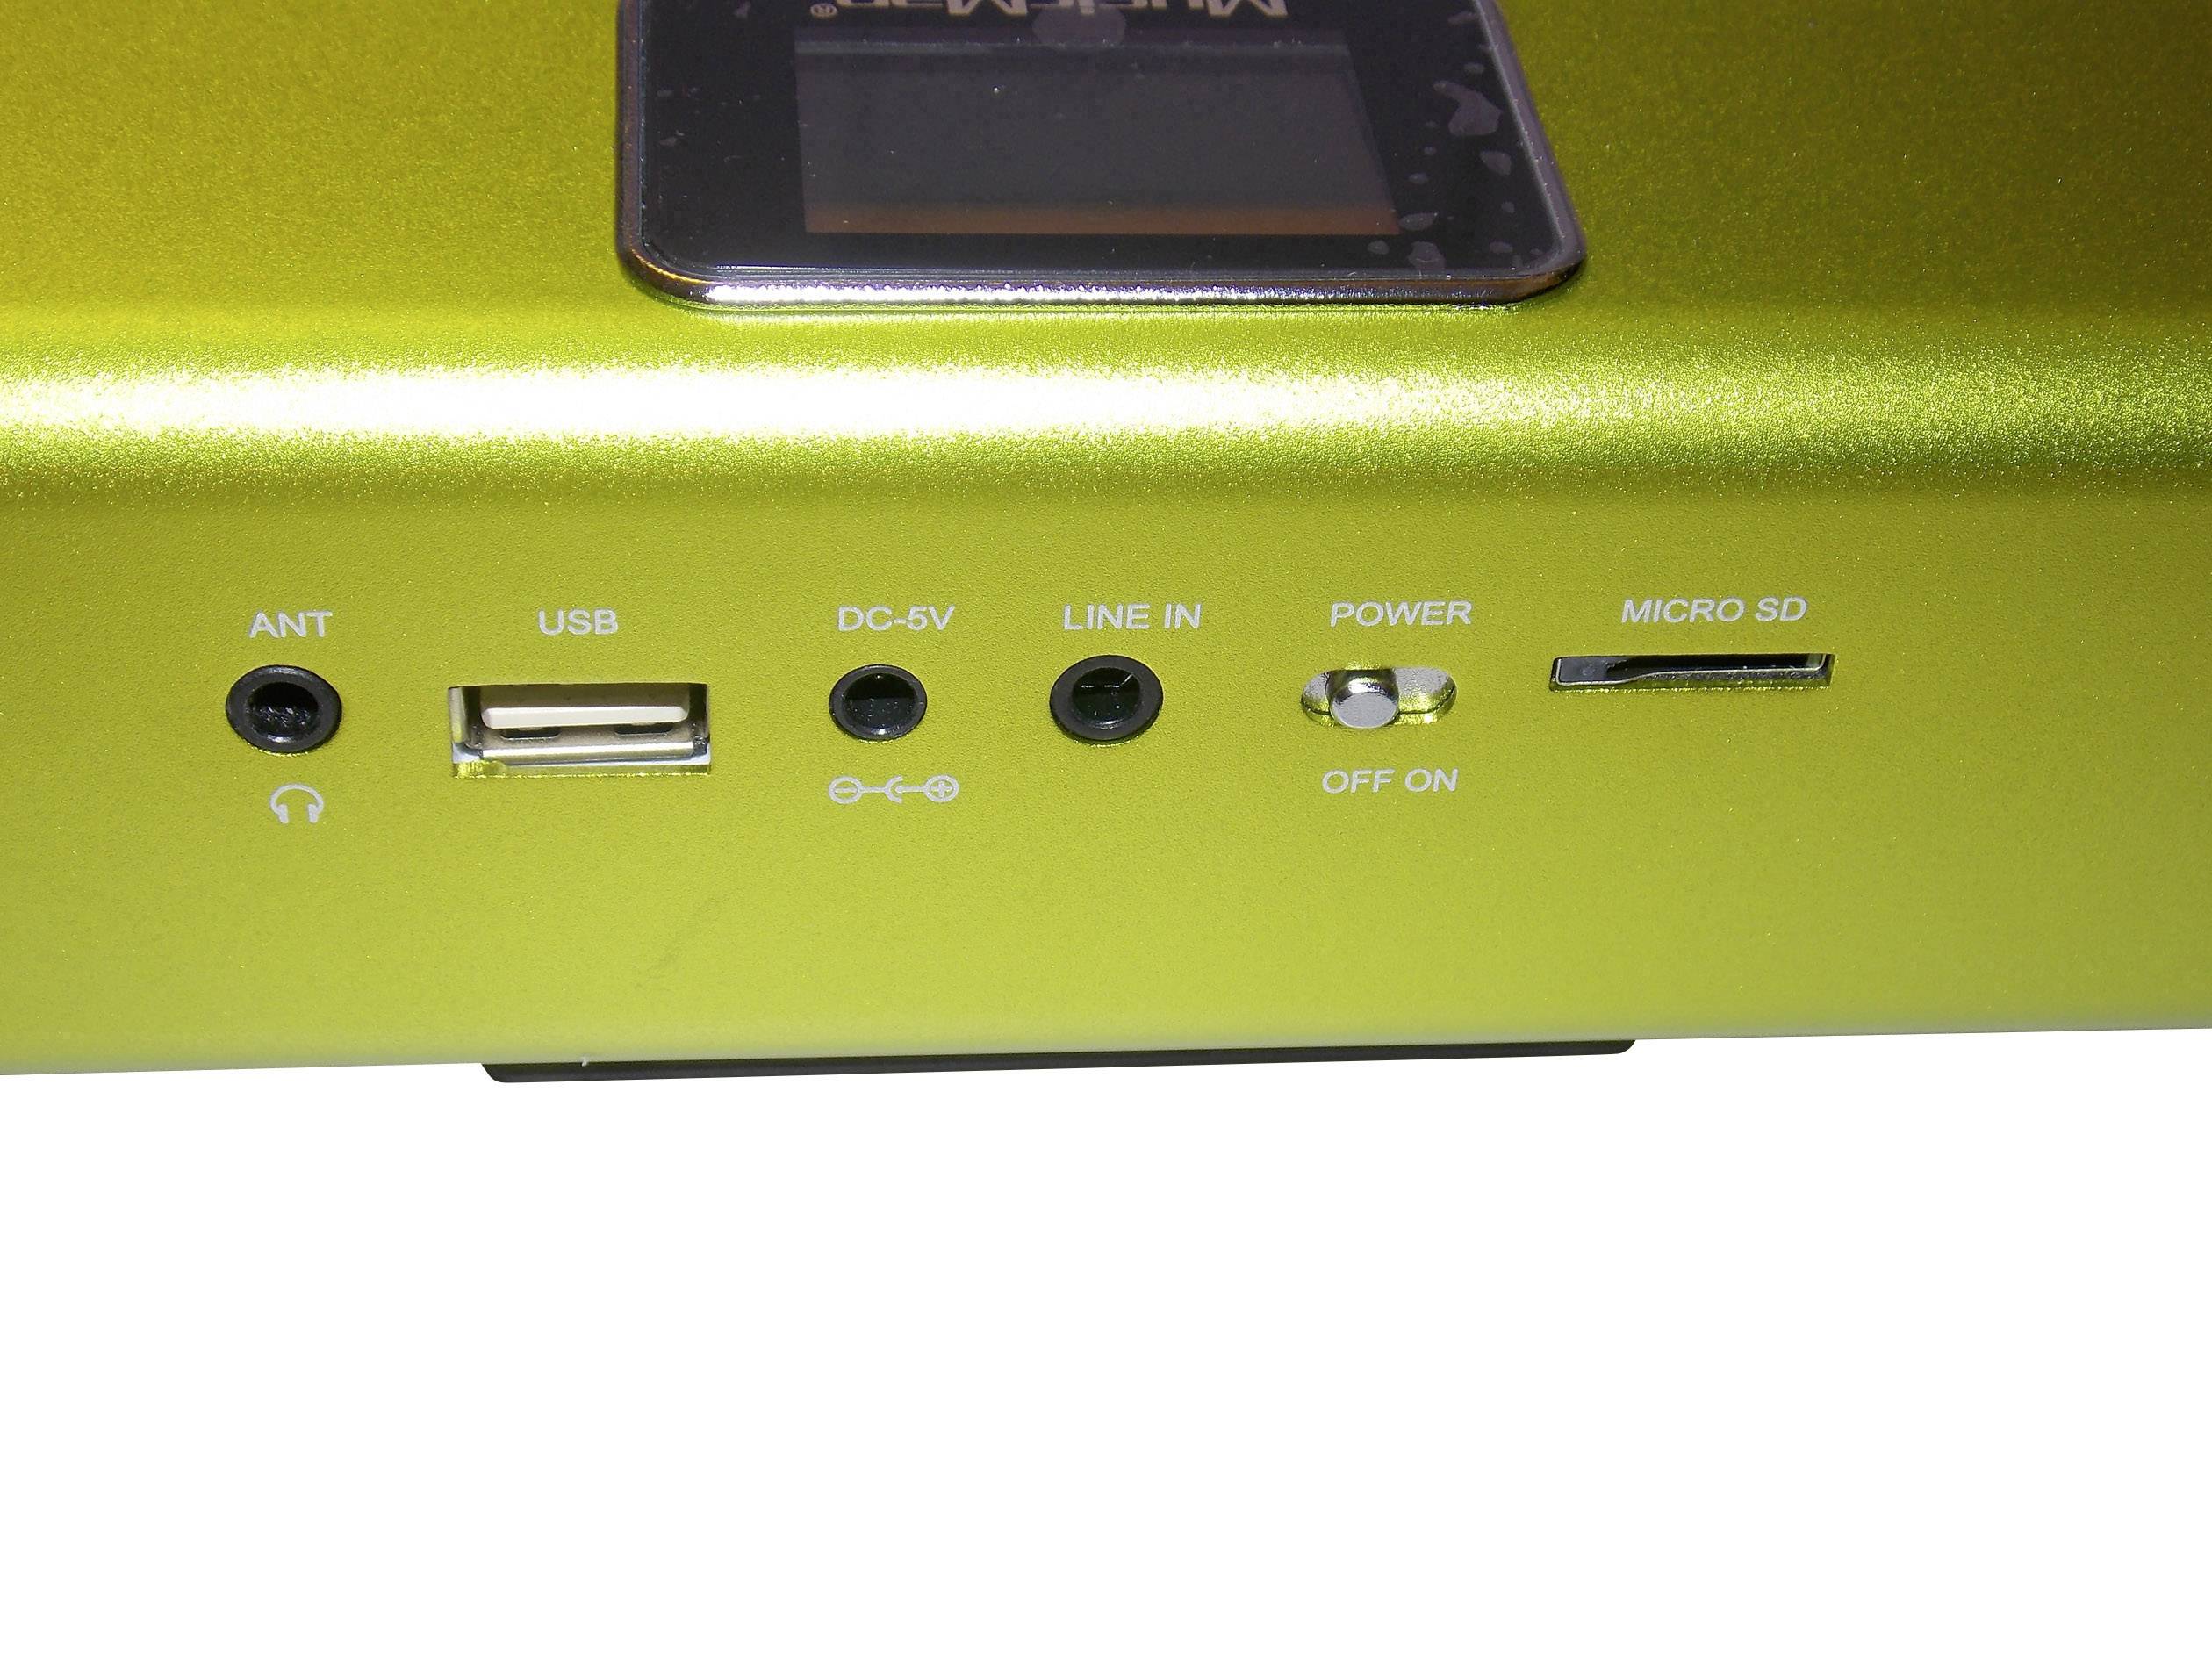 Technaxx MusicMan Midi Soundstation Haut-parleur stéréo pour Lecteur mp3/iPod/iPhone Vert